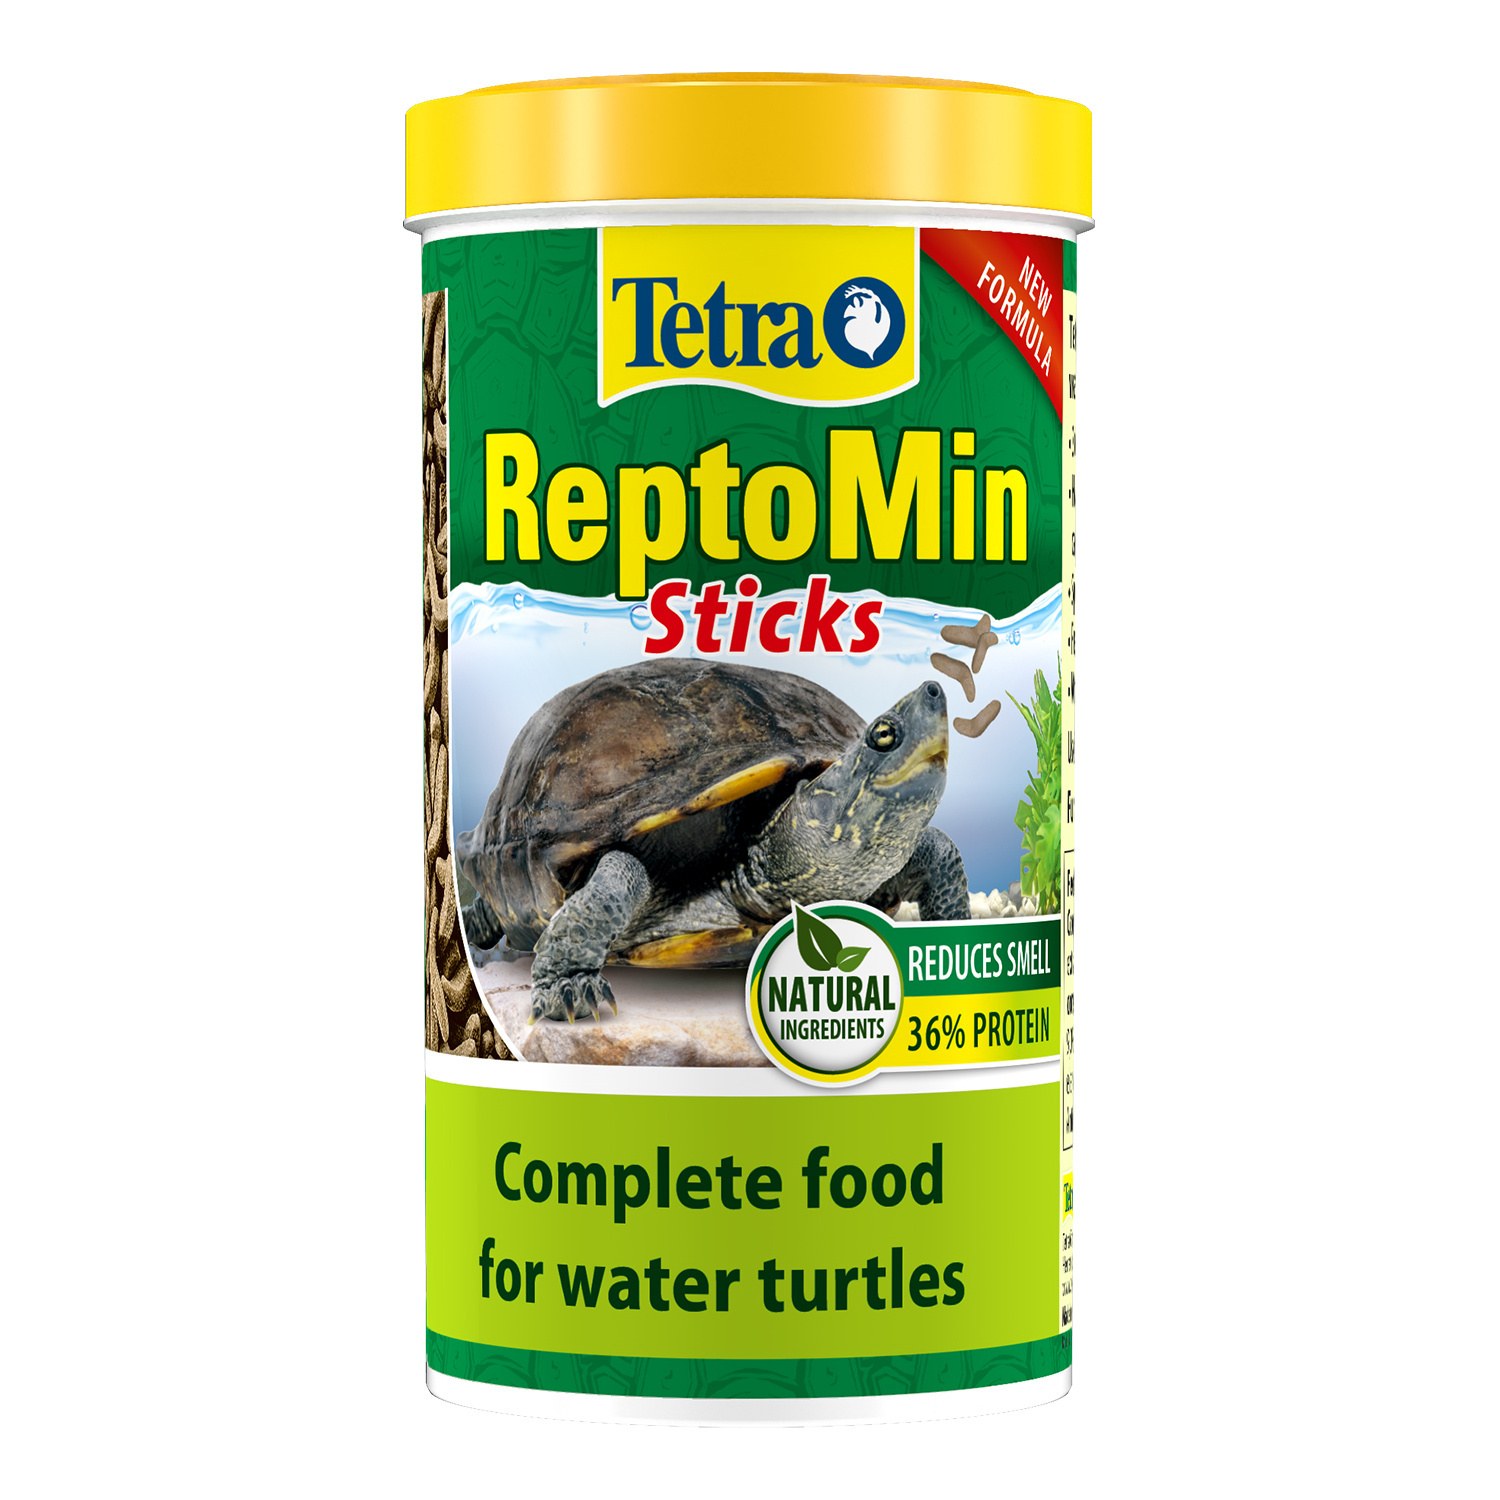 Tetra (корма) Tetra (корма) корм для водных черепах ReptoМin (130 г) tetra корма tetra корма корм для водных черепах палочки reptomin 60 г